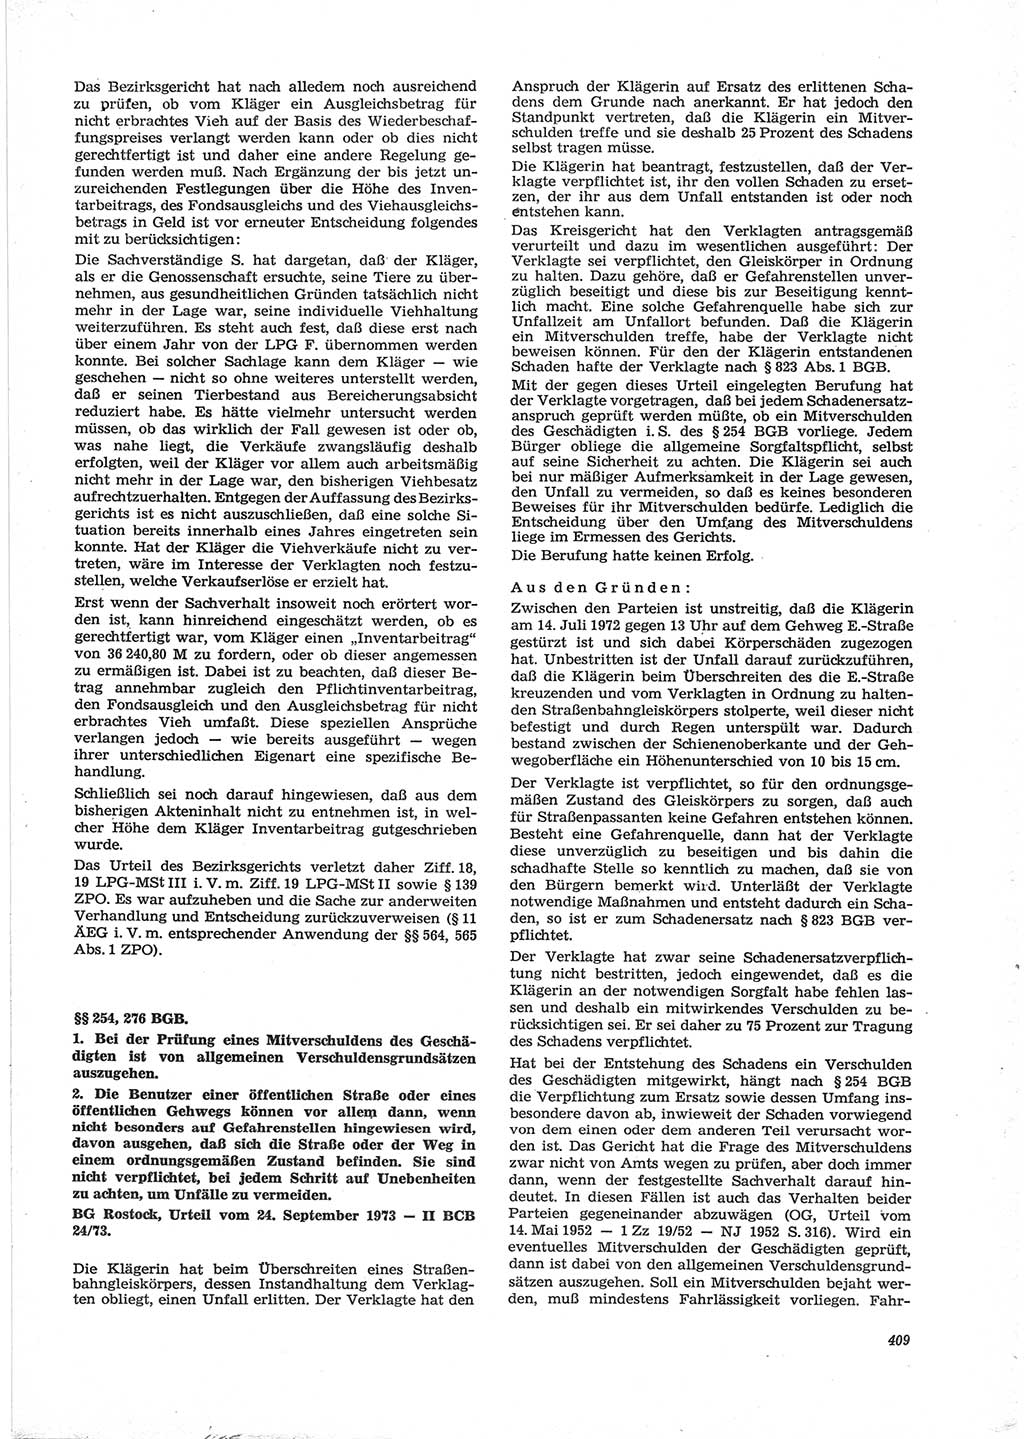 Neue Justiz (NJ), Zeitschrift für Recht und Rechtswissenschaft [Deutsche Demokratische Republik (DDR)], 28. Jahrgang 1974, Seite 409 (NJ DDR 1974, S. 409)